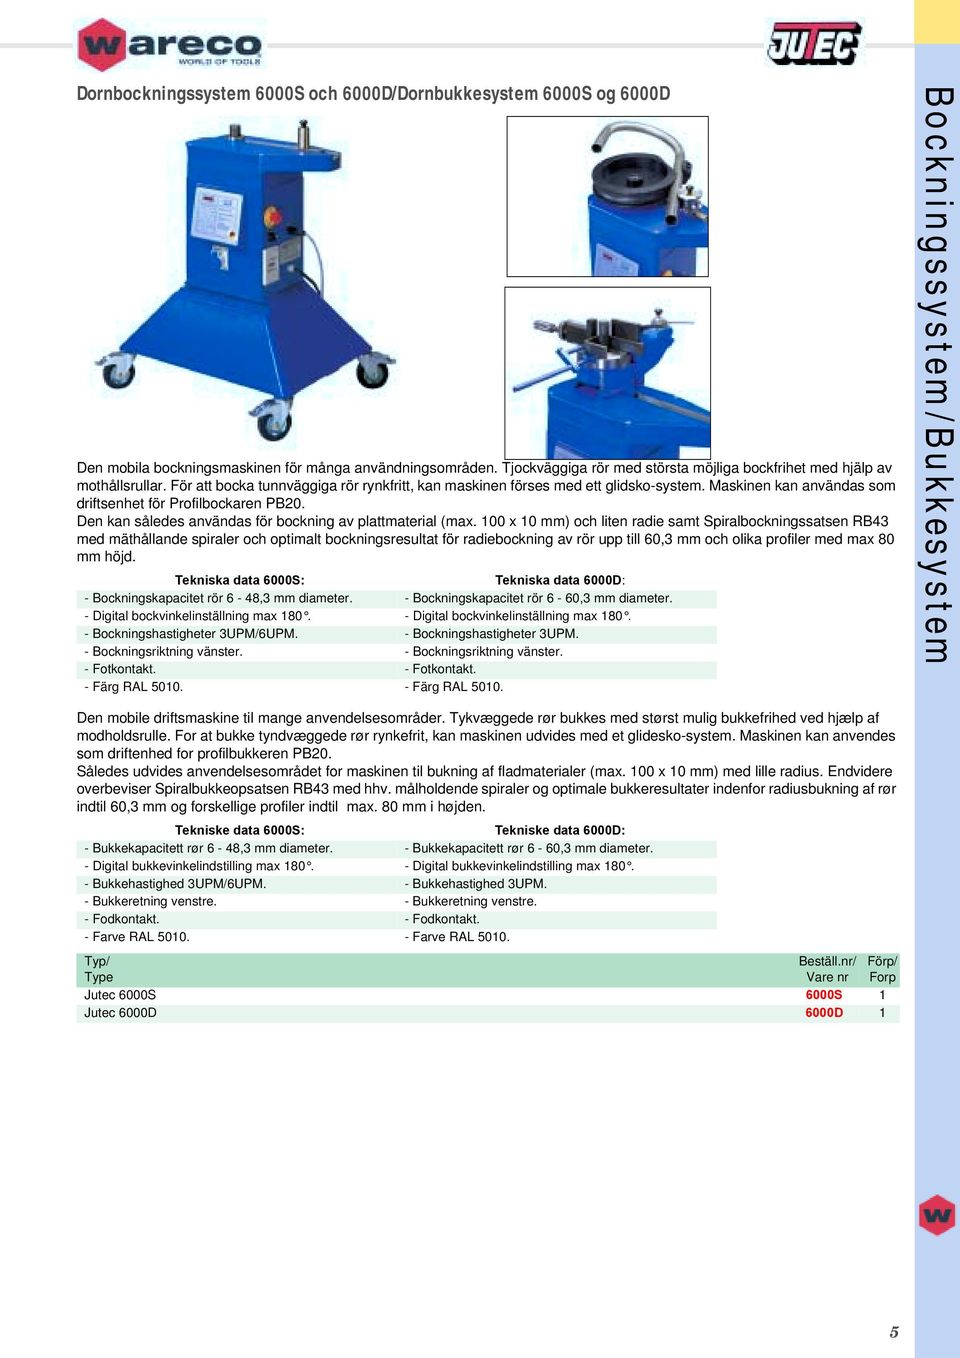 Maskinen kan användas som driftsenhet för Profilbockaren PB20. Den kan således användas för bockning av plattmaterial (max.